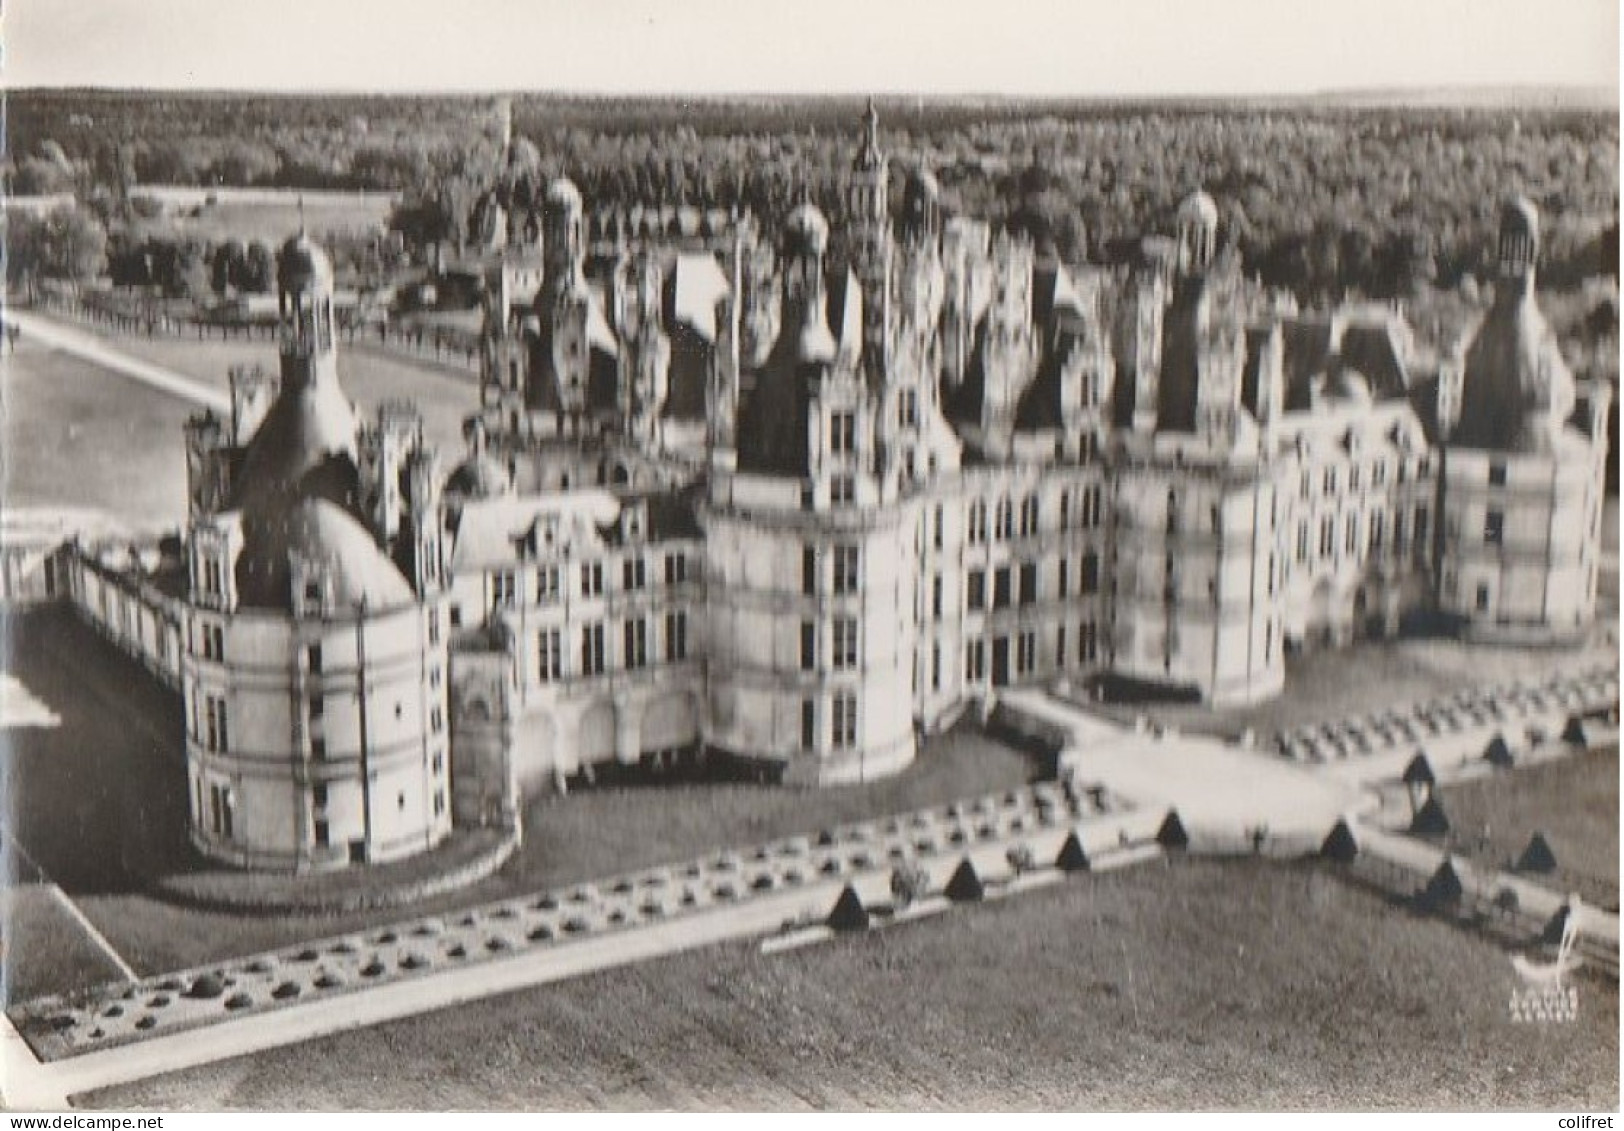 41 - Chambord  -  Vue Aérienne  -  Le Château, Façade Principale - Chambord